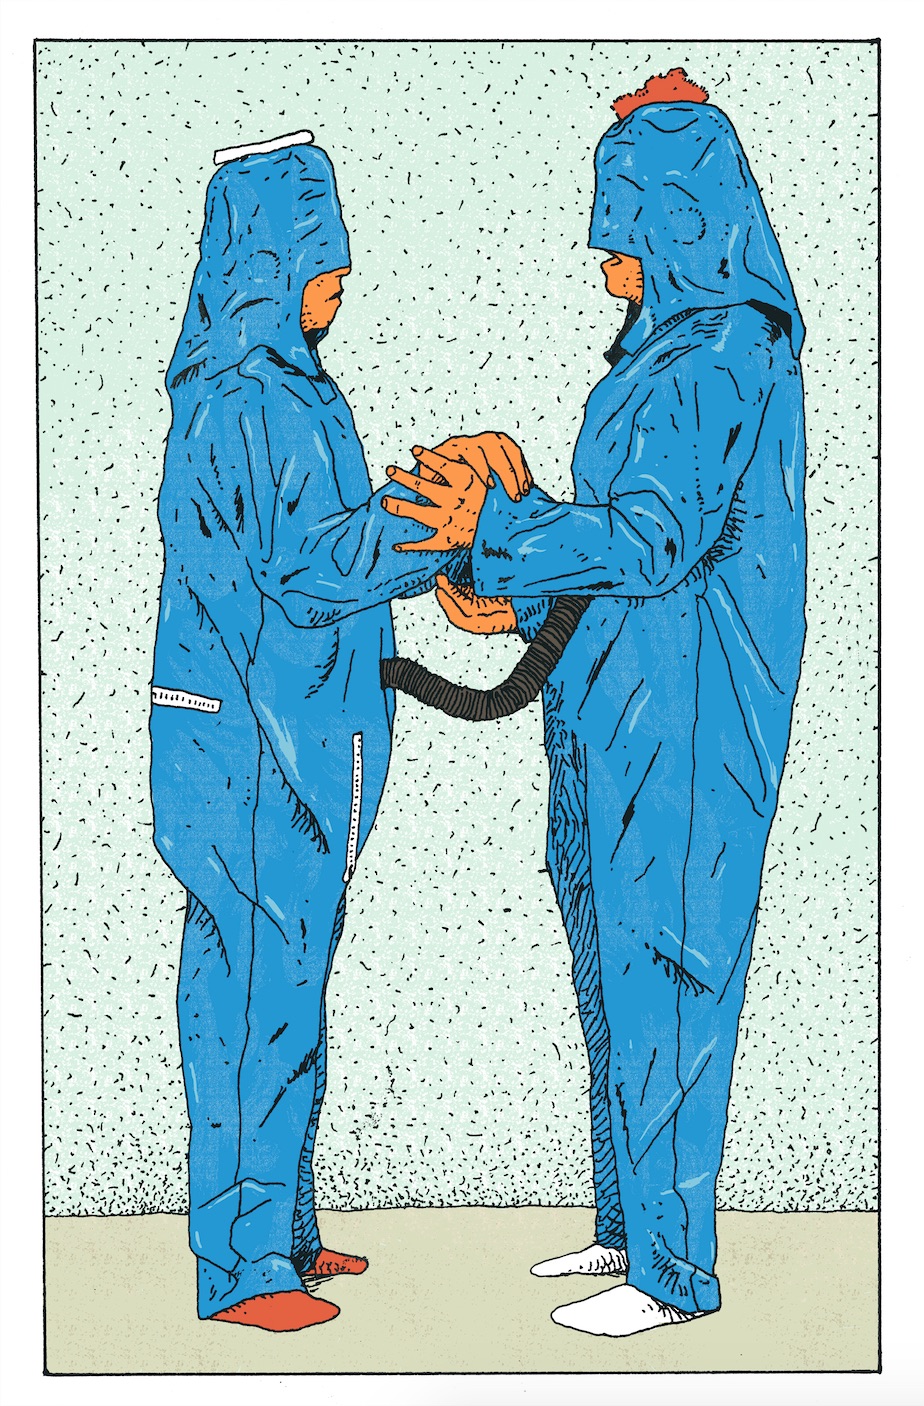 Ilustración de Santiago Moyao basada en la obra de Lygia Clark, O eu e o tu: série roupa-corpo-roupa, 1967